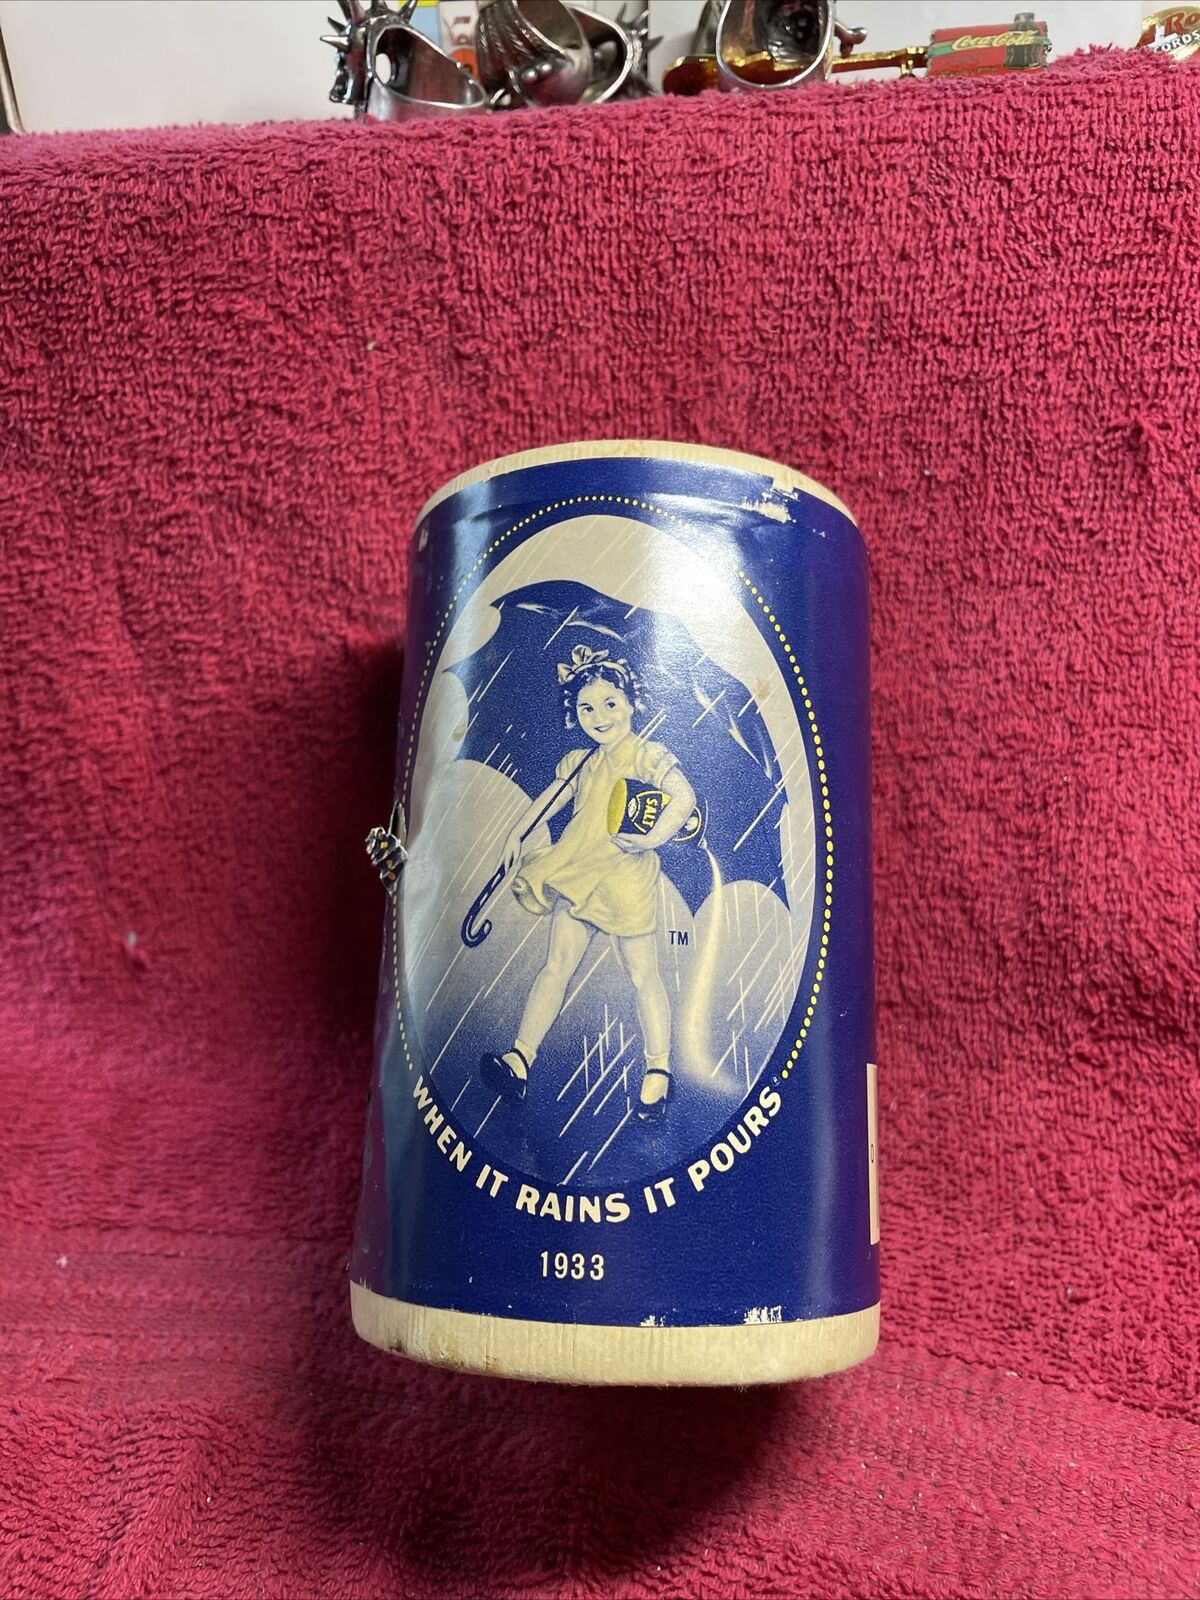 Morton Salt Container “When it Rains it Pours” Vintage Reproduction 1933